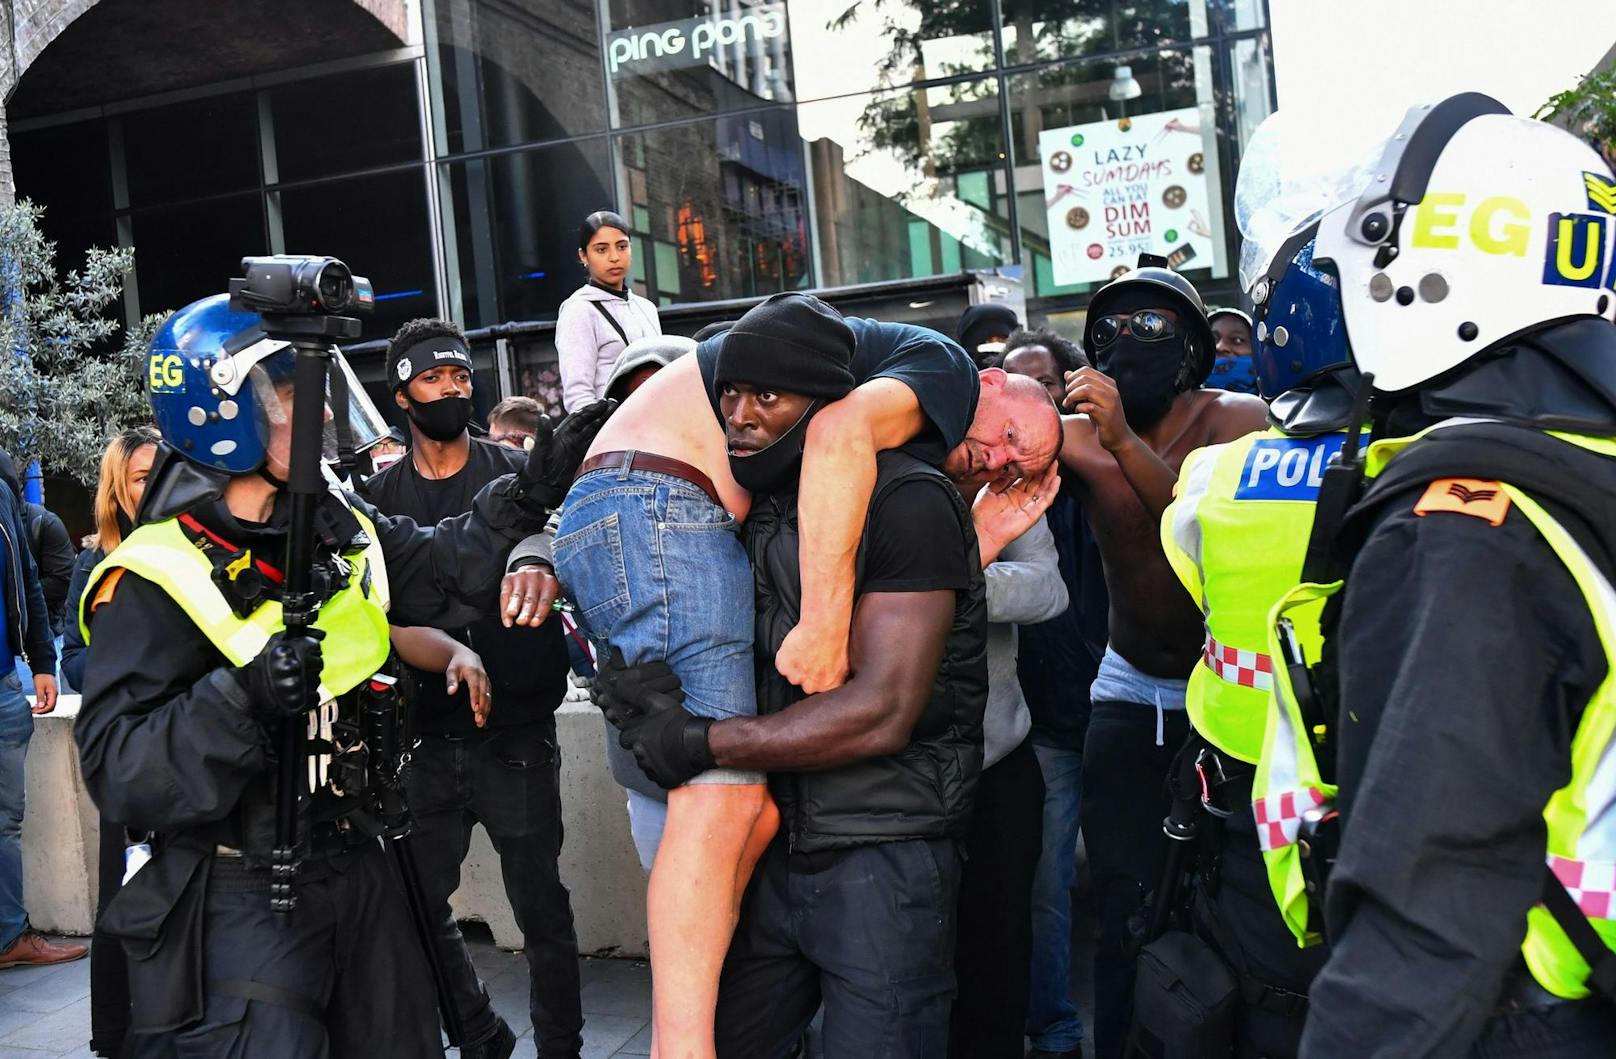 Ikonisches Bild: Ein "Black Lives Matter"-Demonstrant trägt einen verwundeten Rechten.